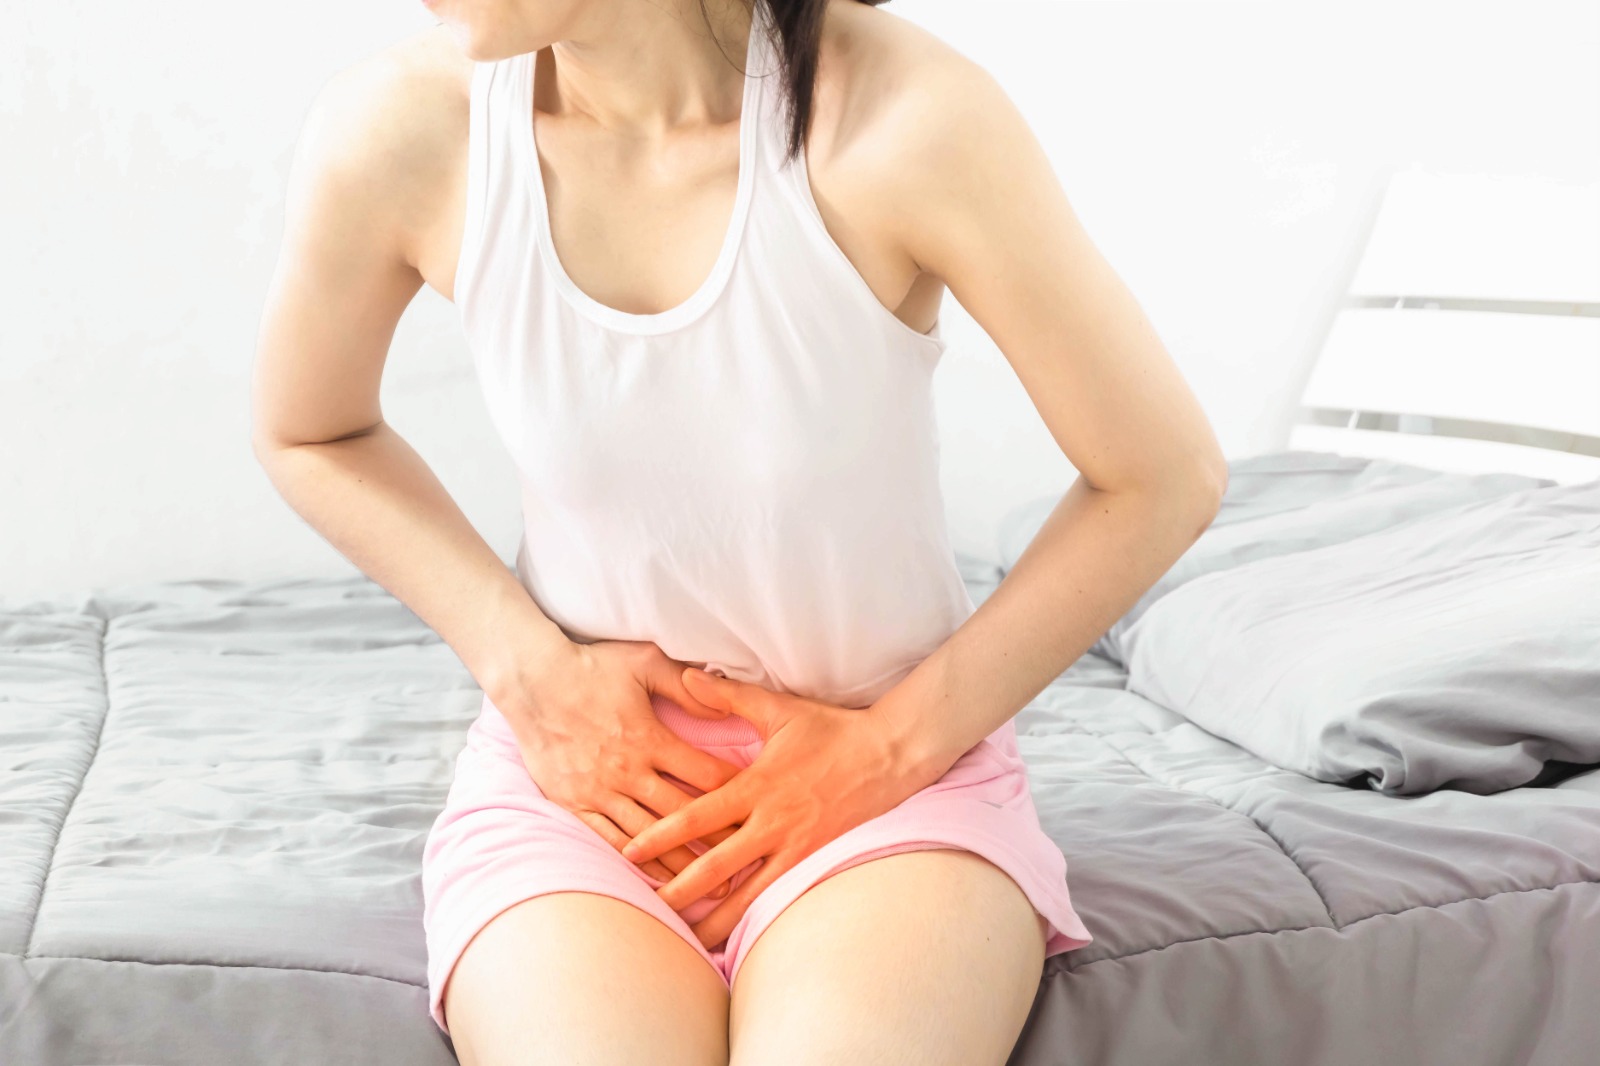 Sintomas de infección urinaria en mujeres (1)